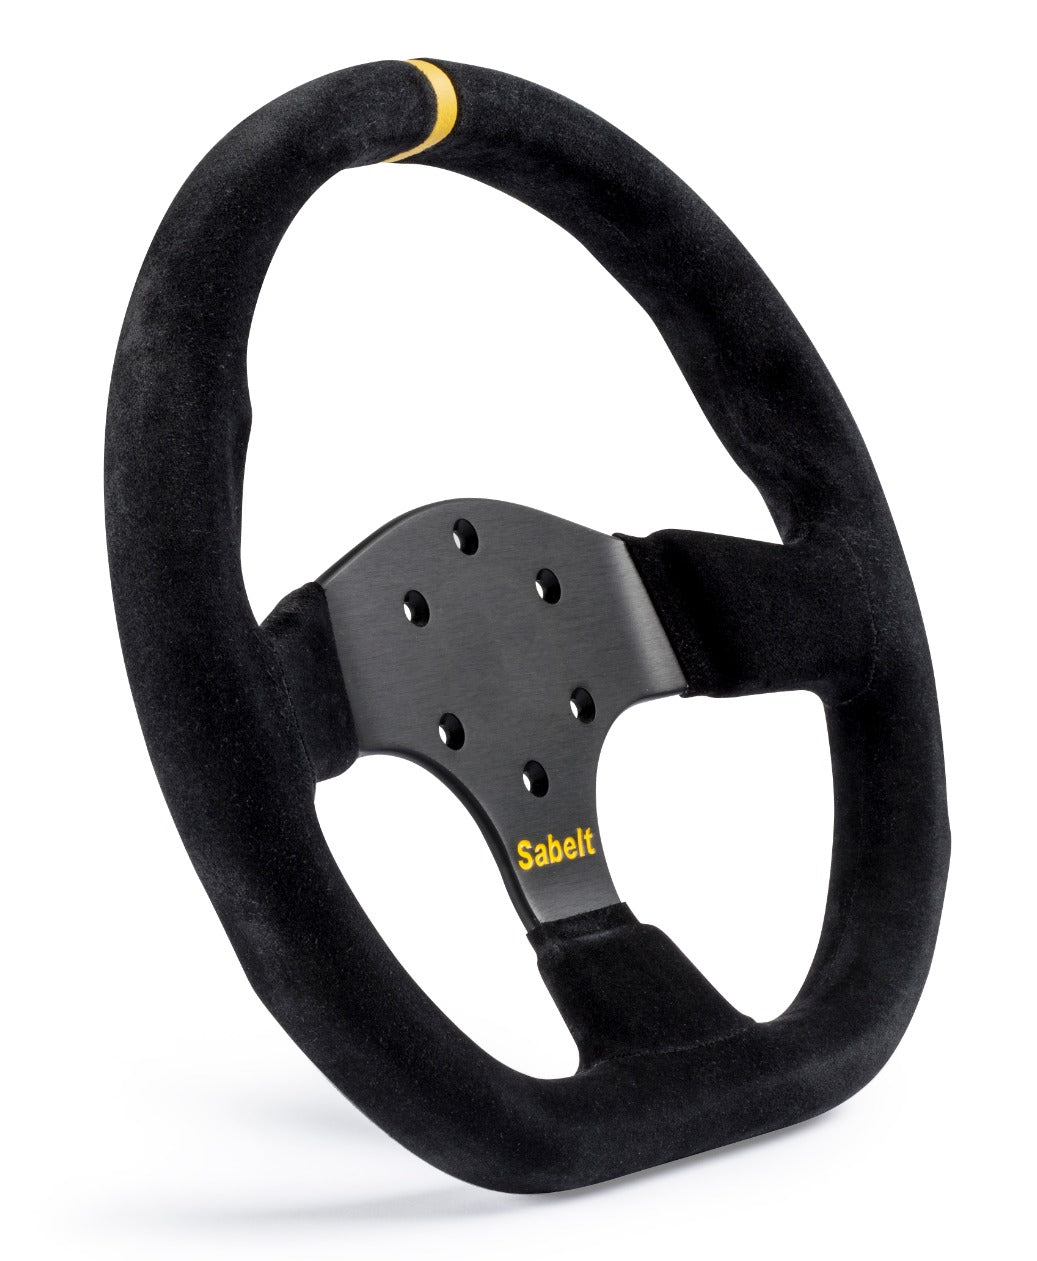 Sabelt SW-733 Steering Wheel (330 mm)